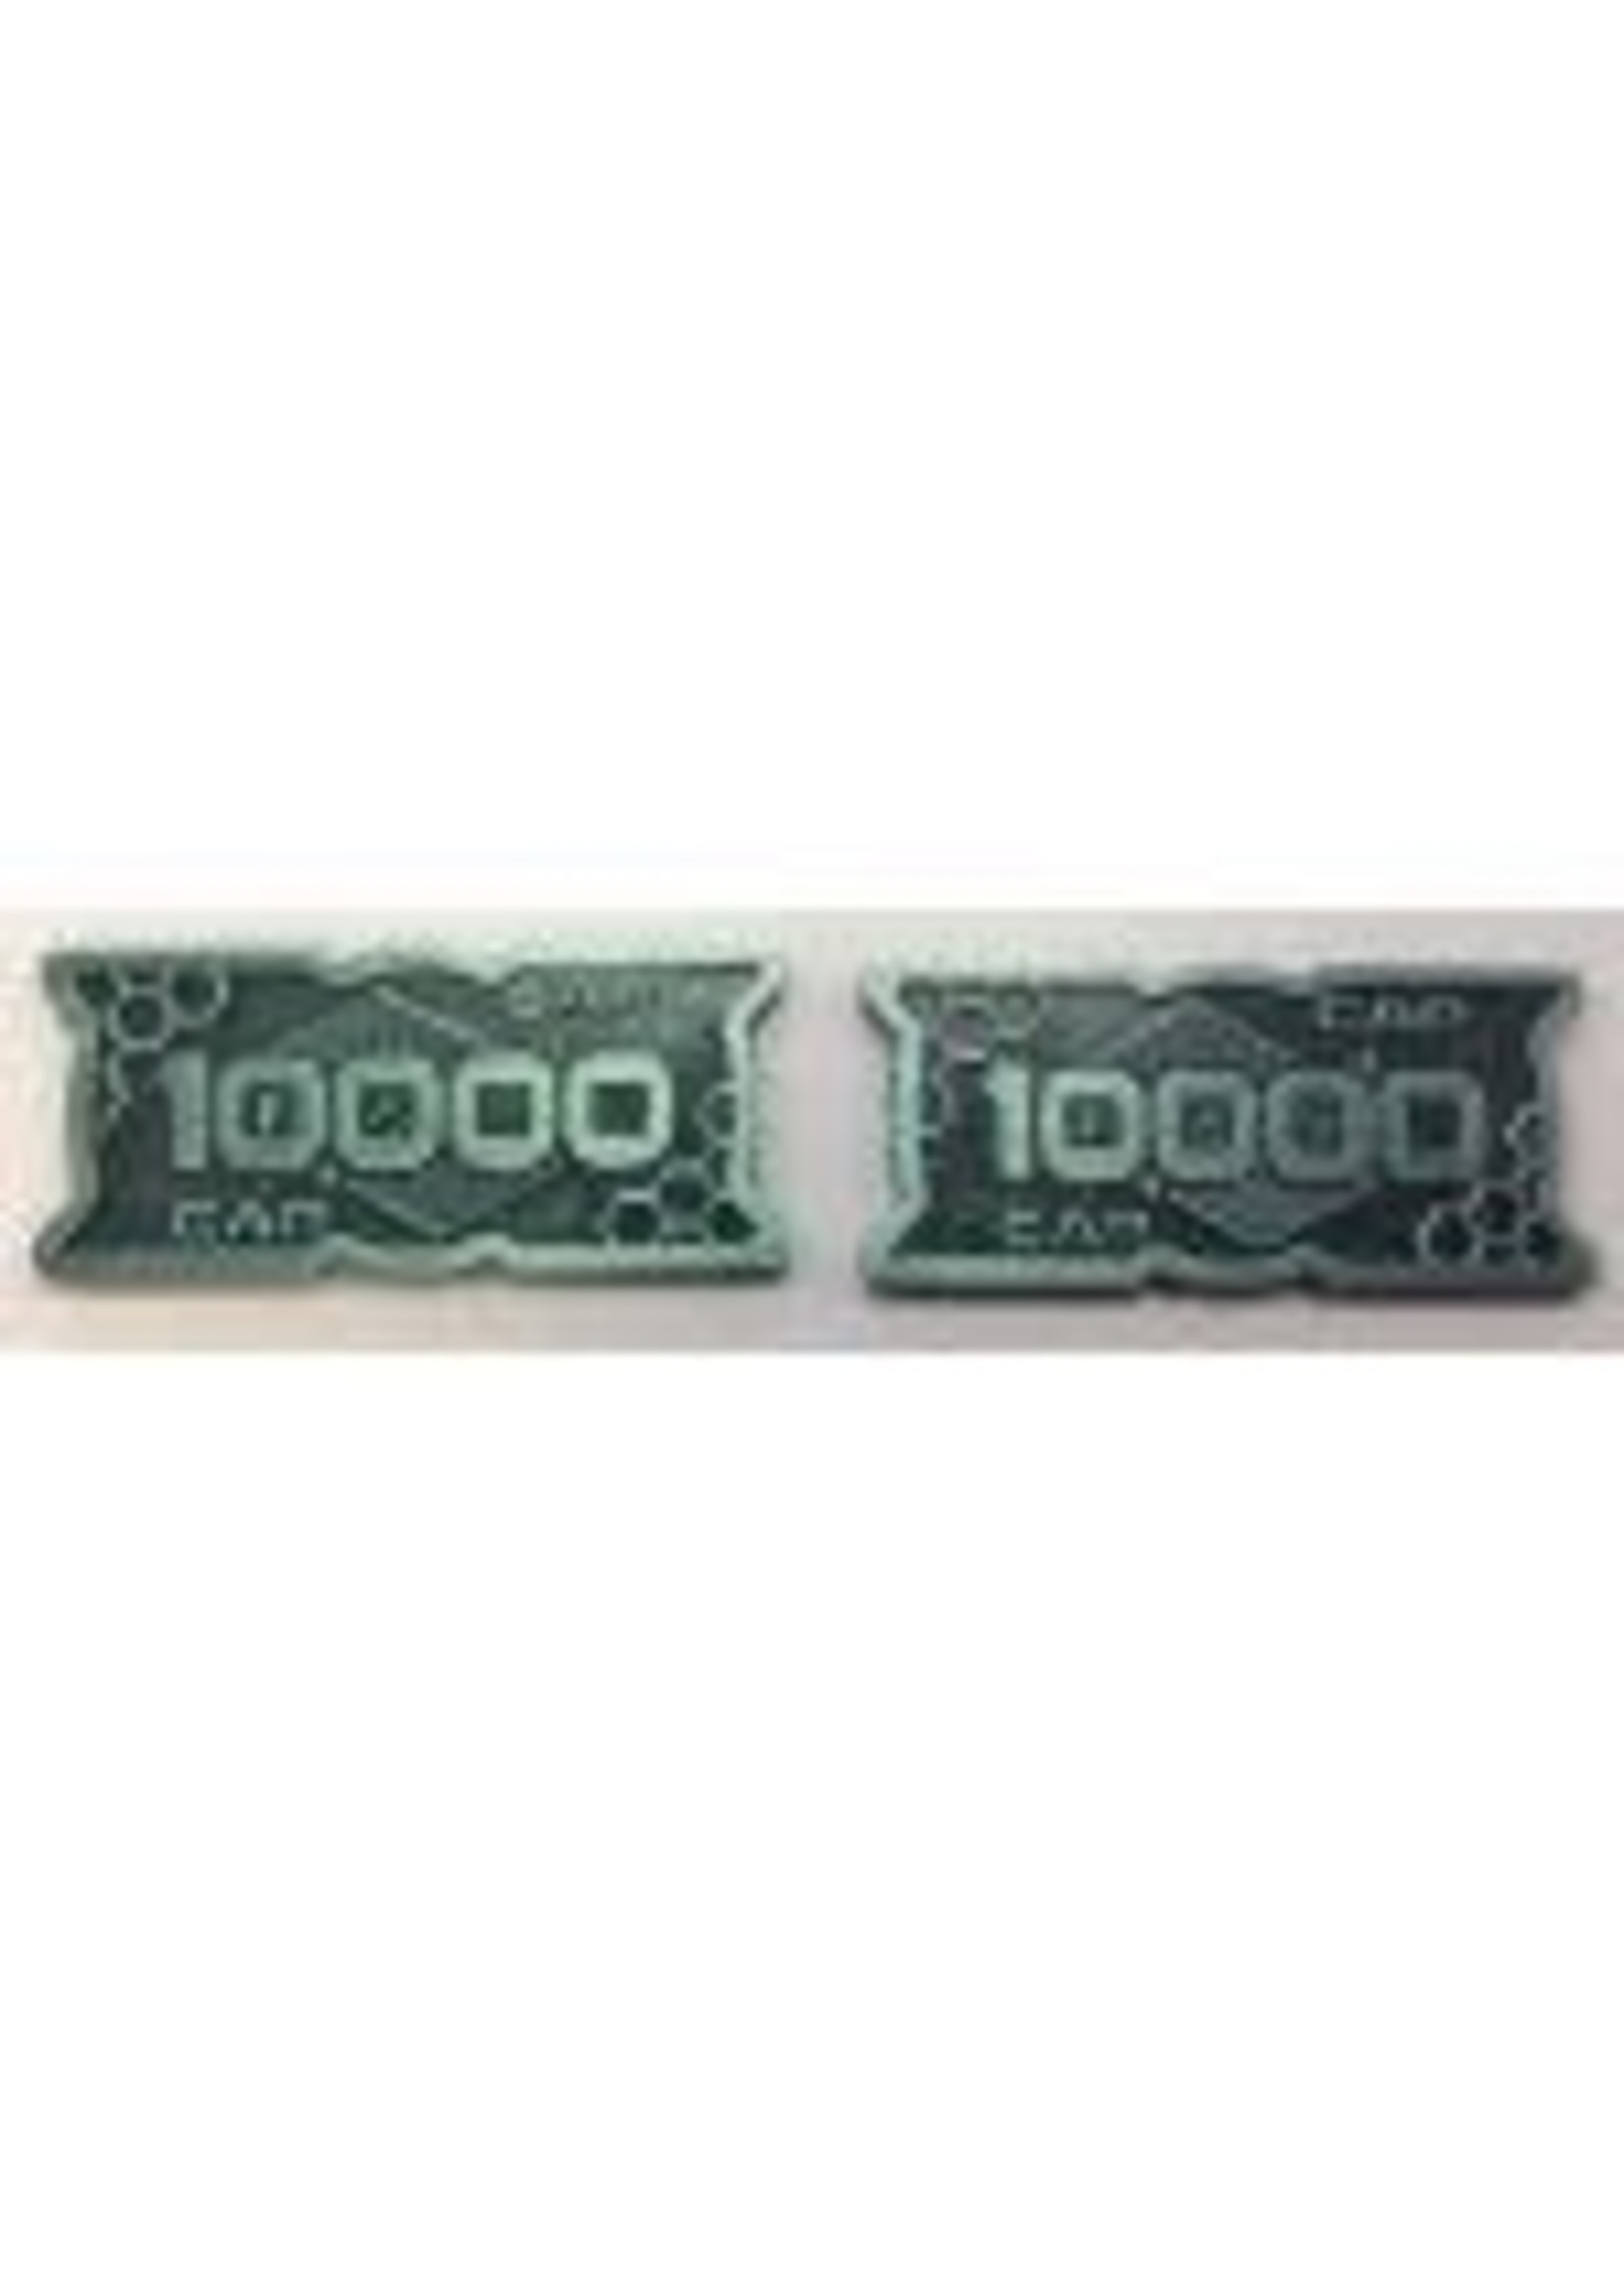 Minion Games Futuristic Metal Coins by Minion Games - 10000 CAP (10x)